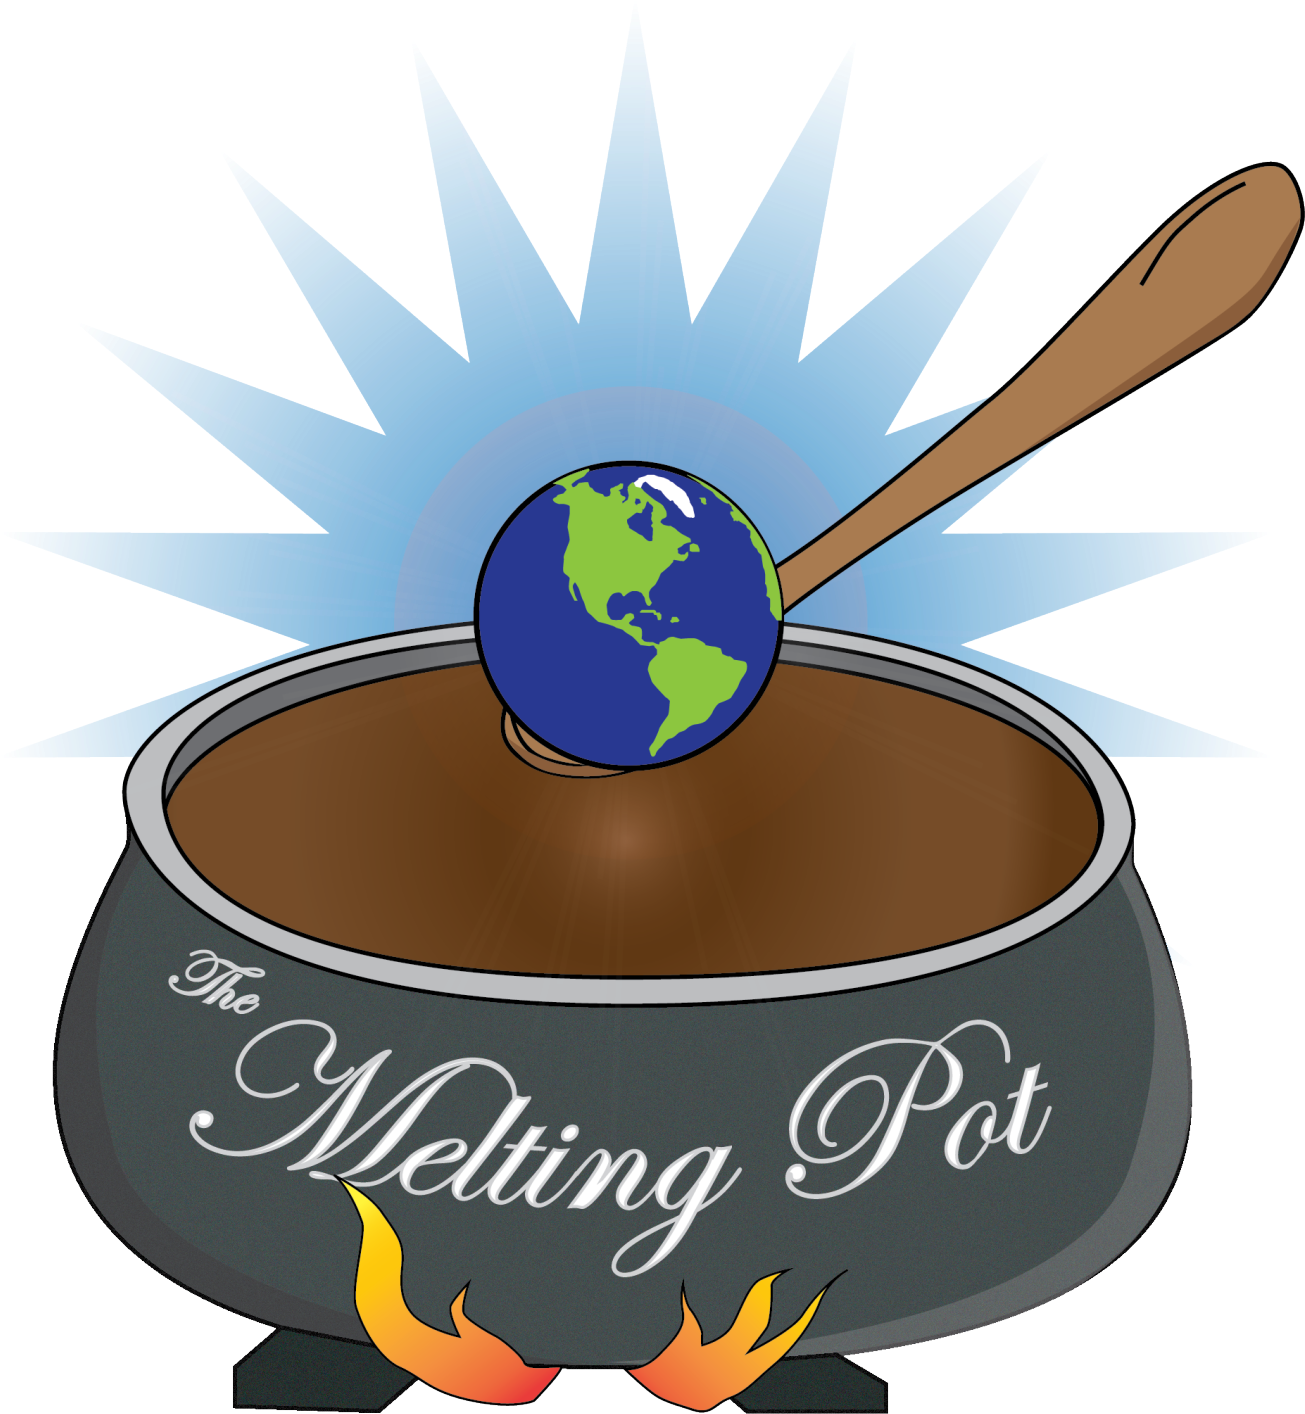 Melting Pot - Melting Pot Of Cultures (1358x1525)